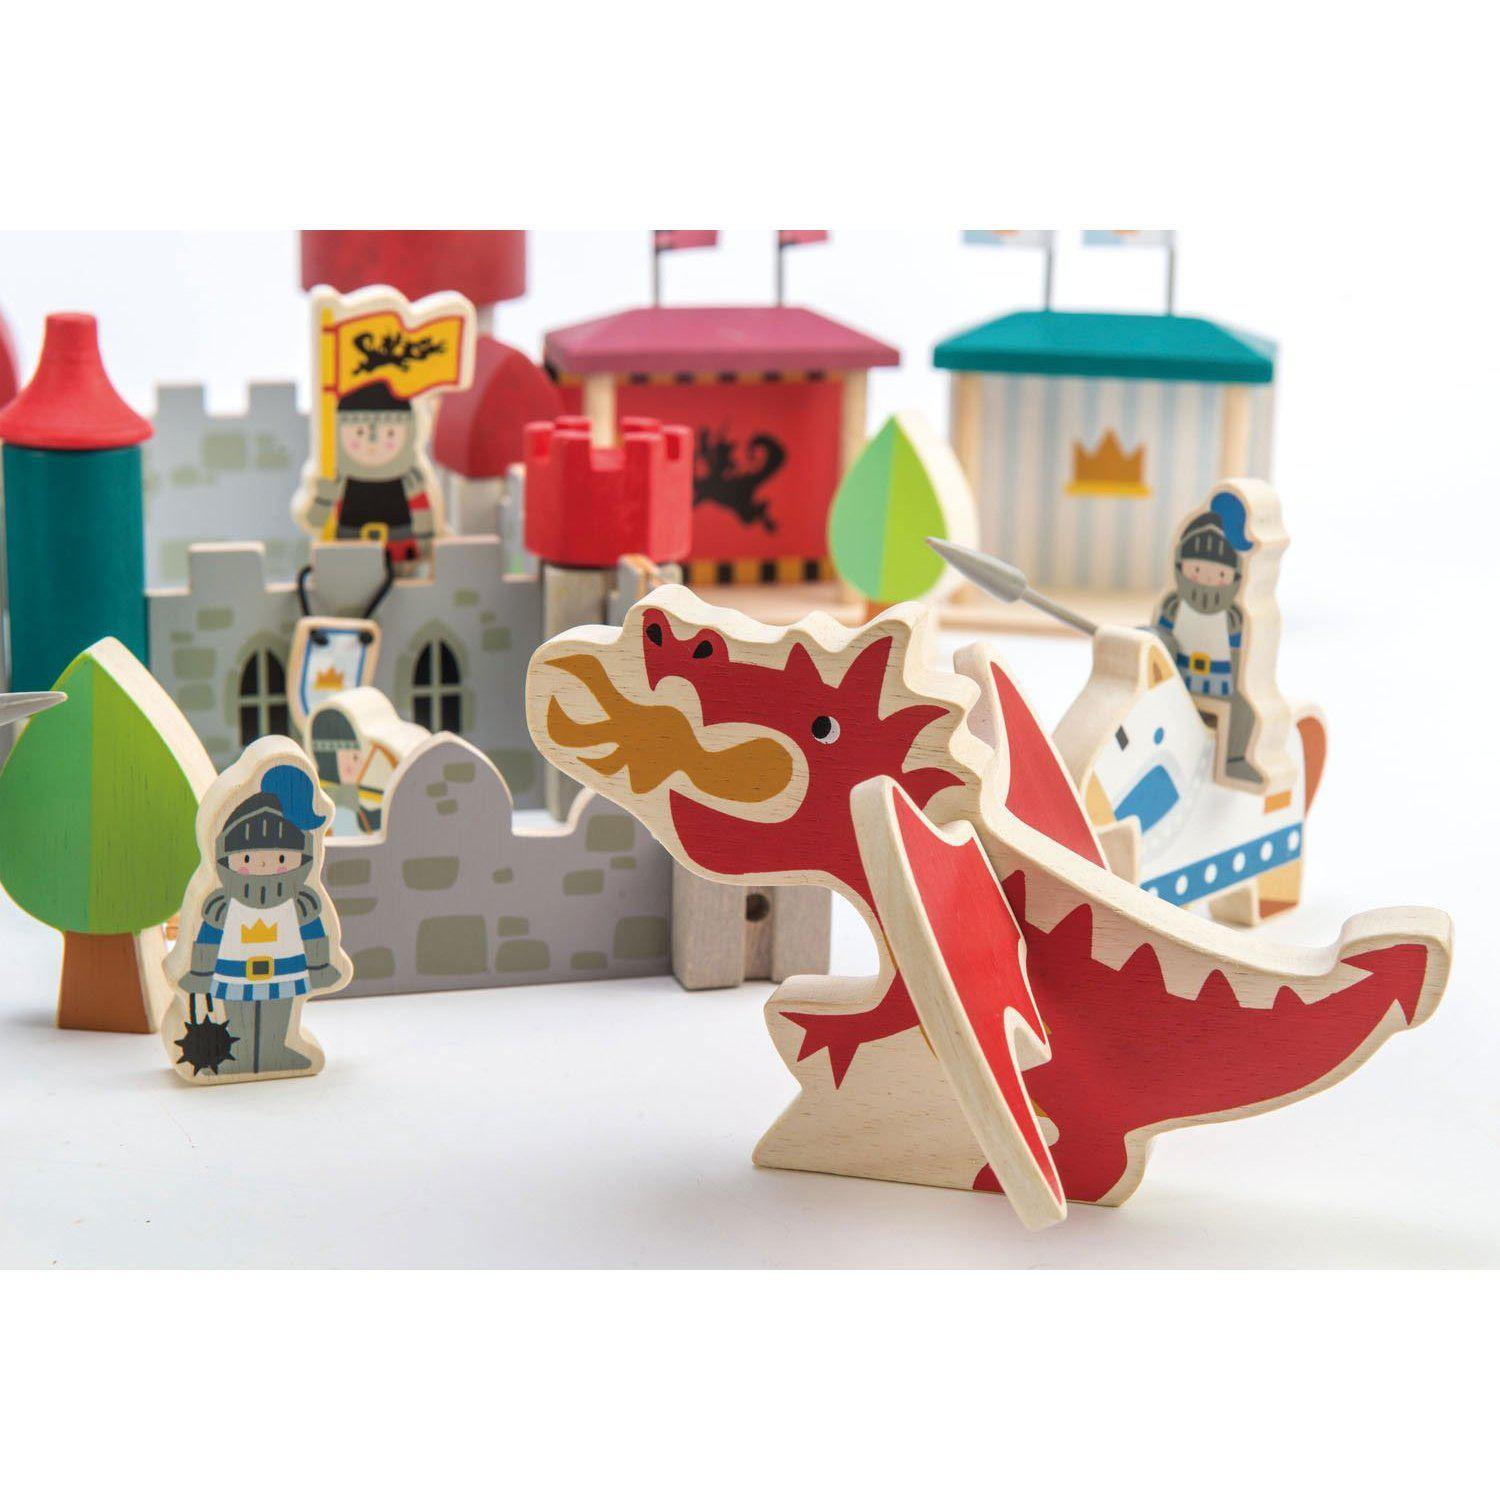 Királyi palota, din lemn premum - Royal Castle - 100 darab - Tender Leaf Toys-Tender Leaf Toys-2-Játszma.ro - A maradandó élmények boltja